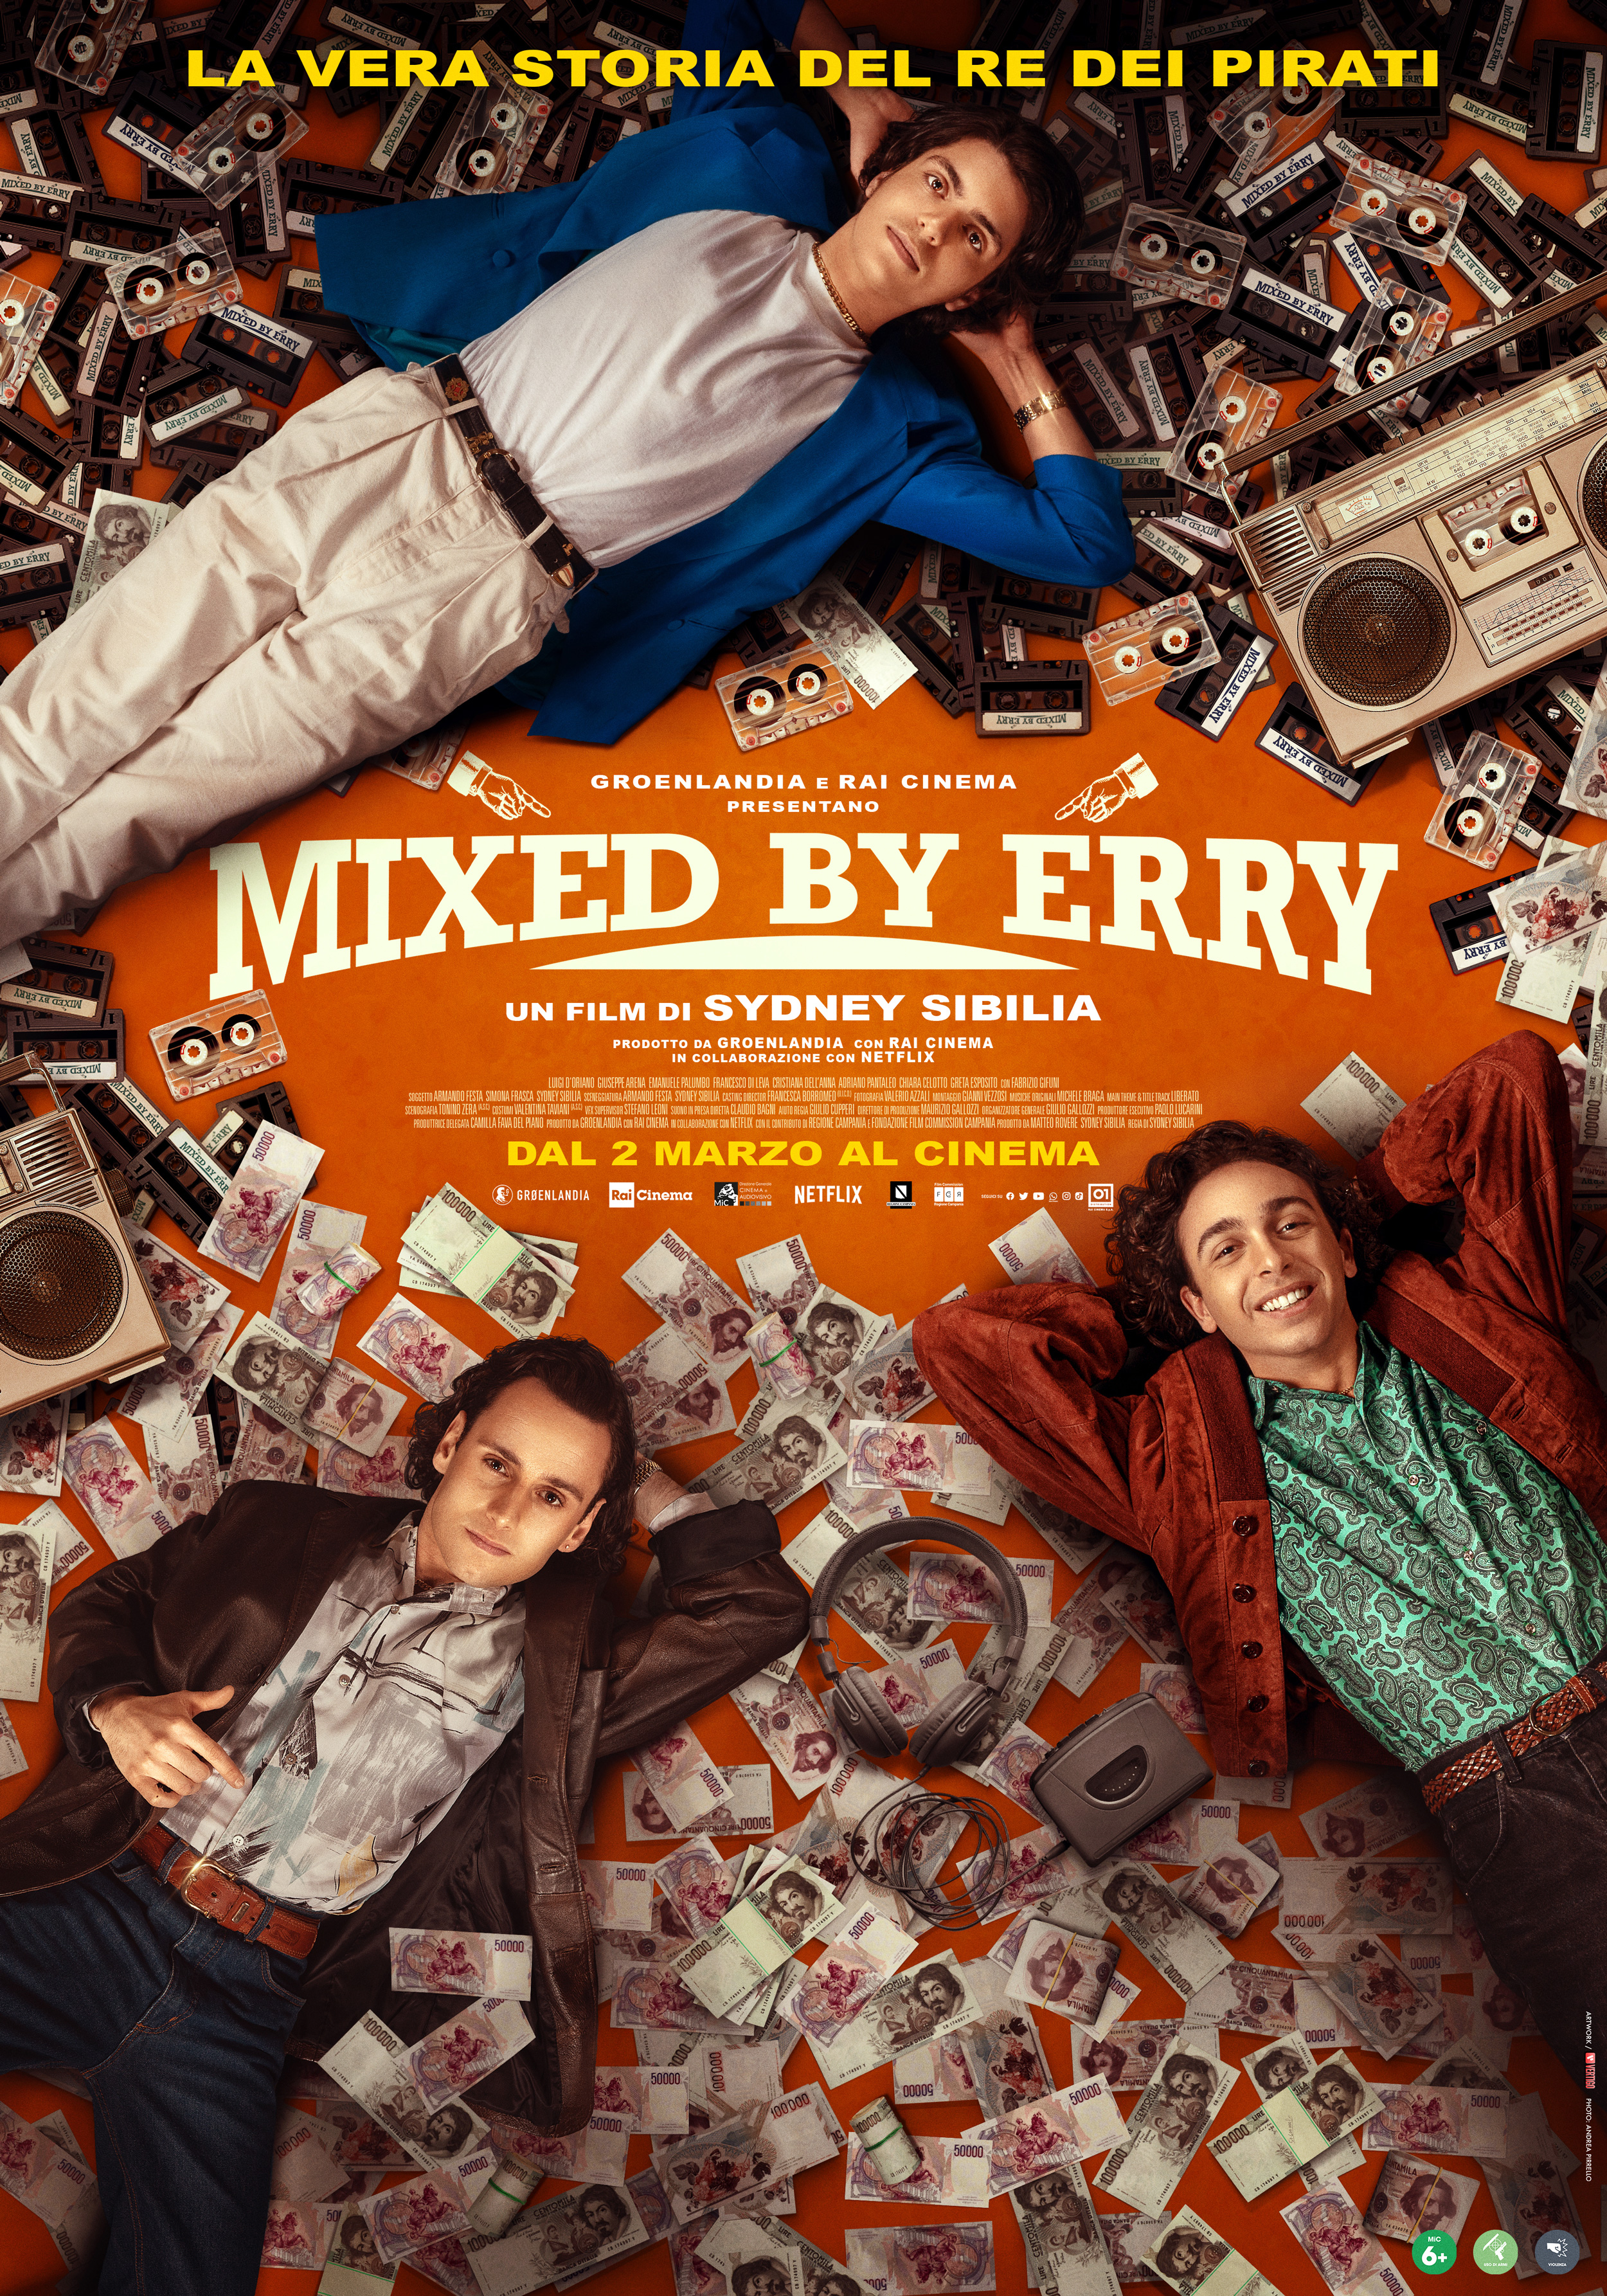 Mixed By Erry”: trailer, poster e data di uscita del film di Sydney Sibilia | RB Casting